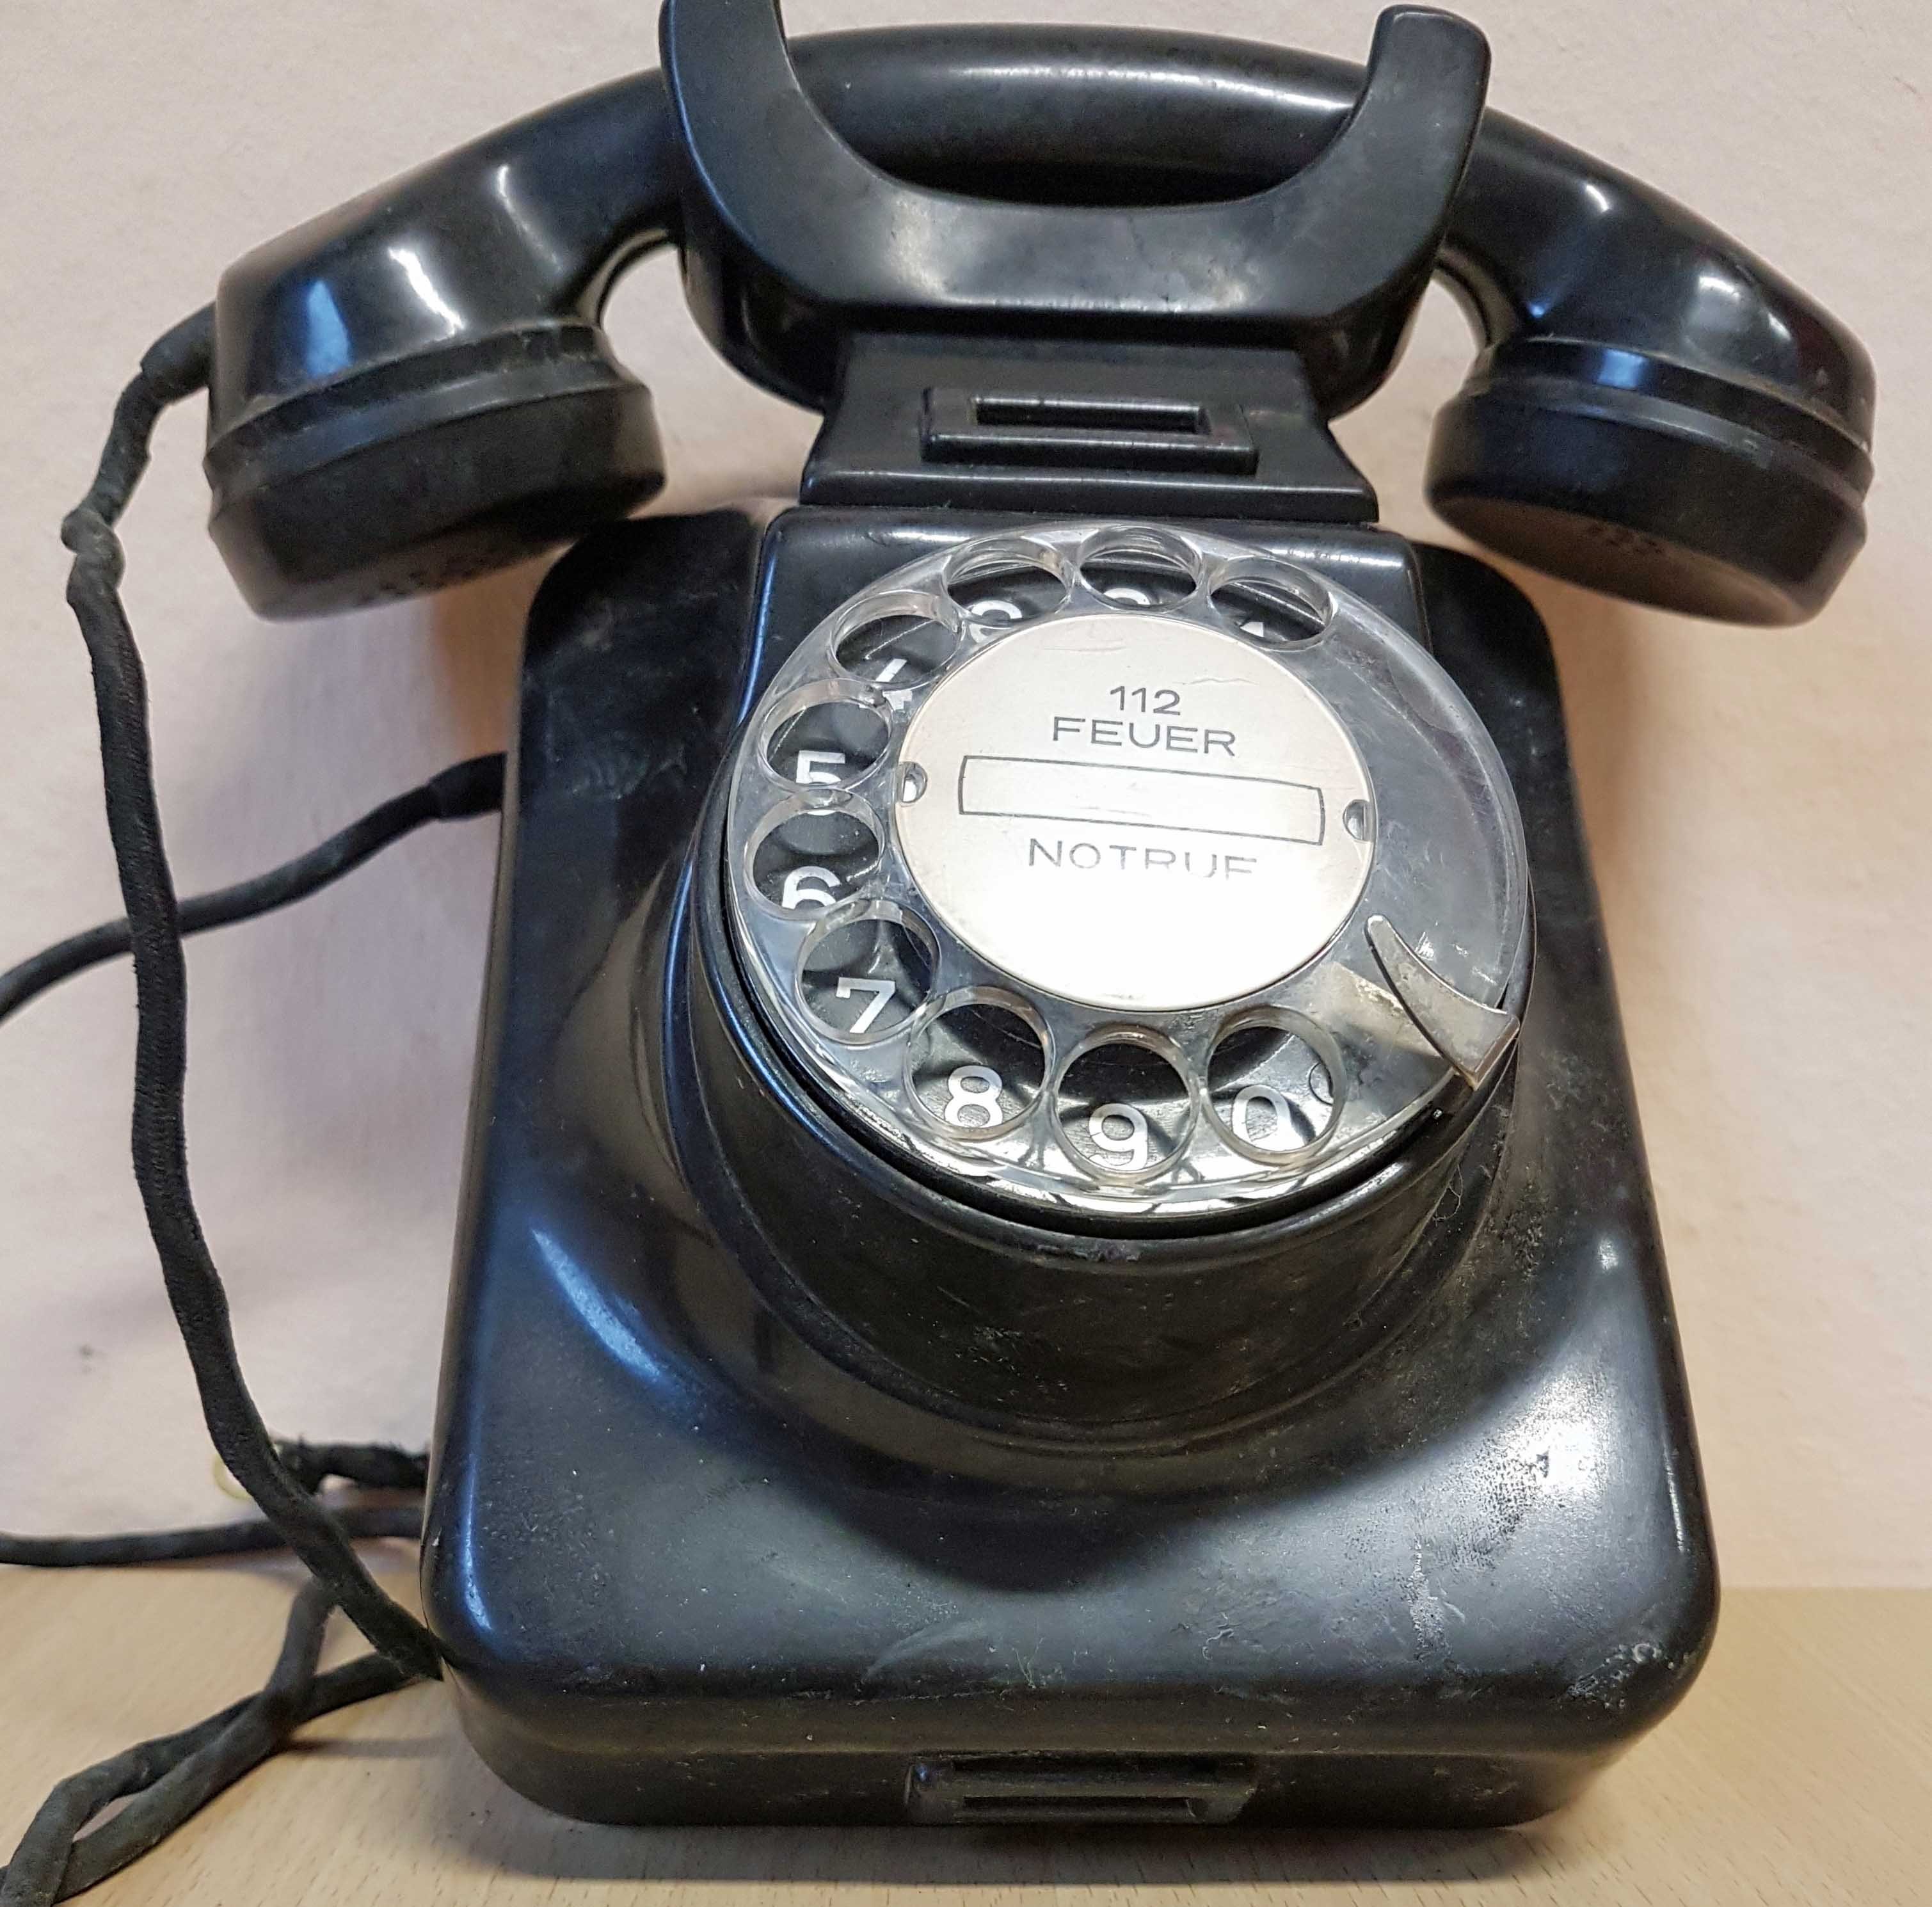 Hagenuk Wandtelefon schwarz, Type W49 (museum comp:ex CC BY-NC-SA)